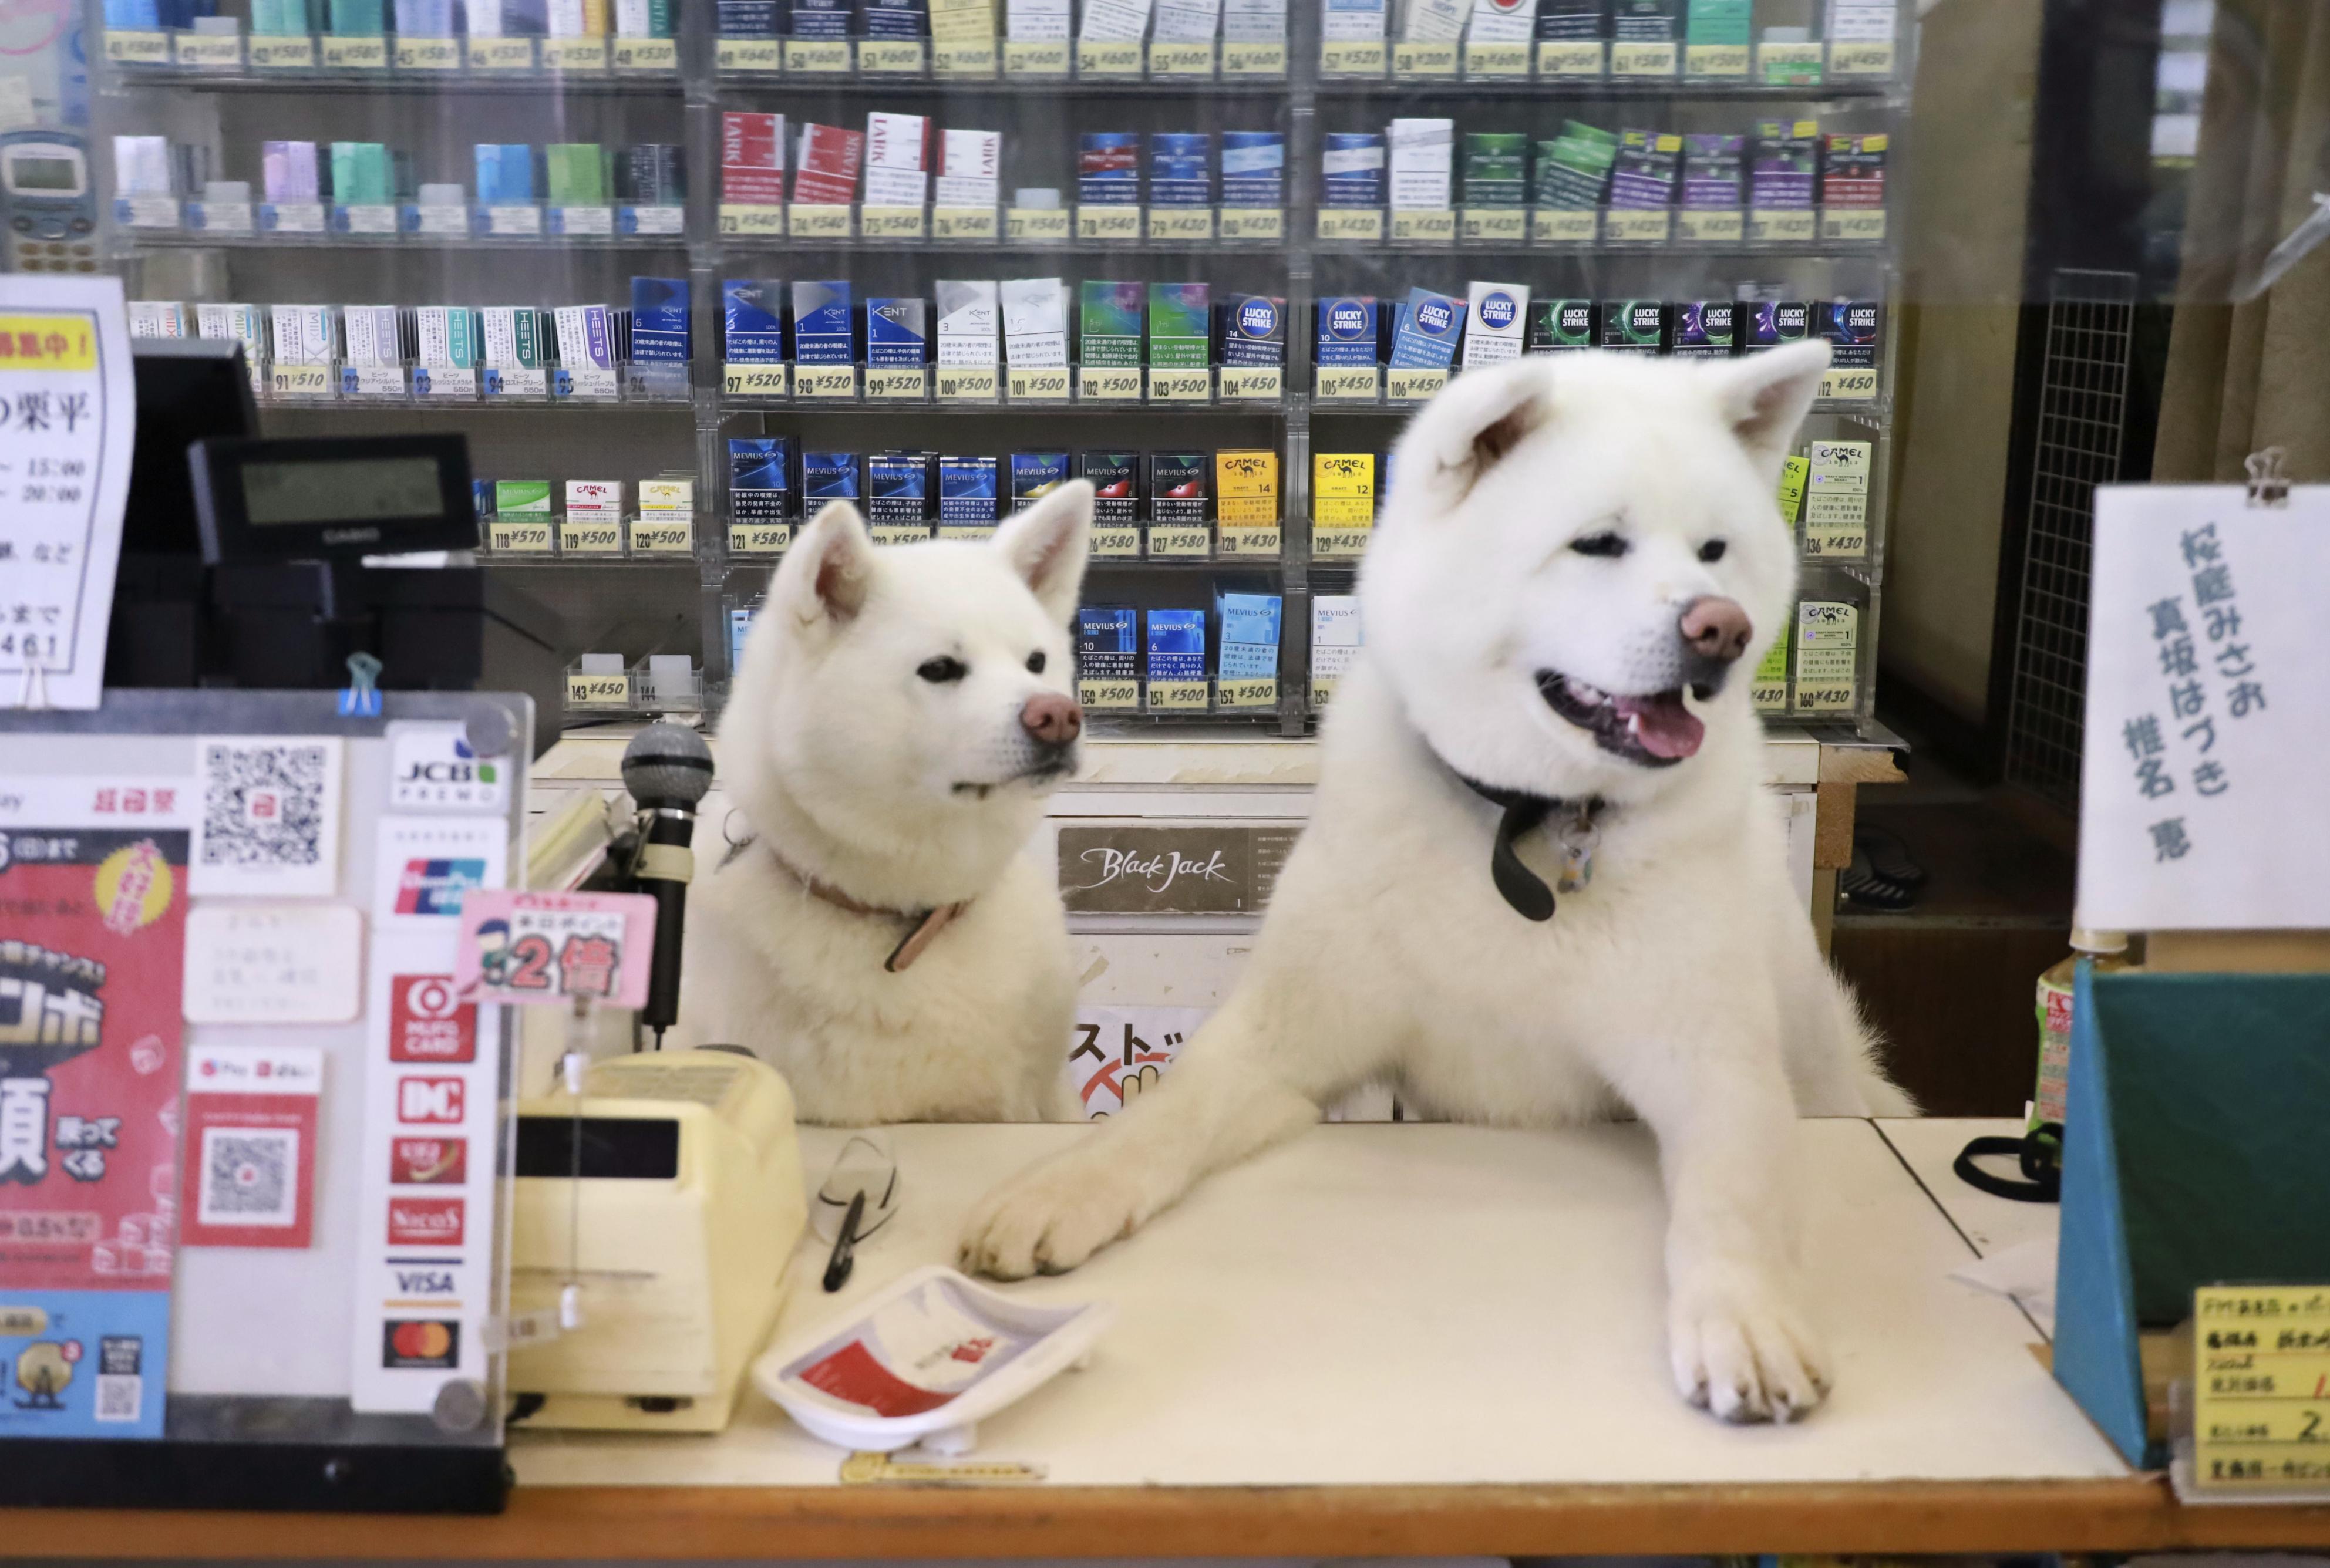 秋田の酒屋の〝看板犬〟 レジ打ちしぐさ話題に - 産経ニュース